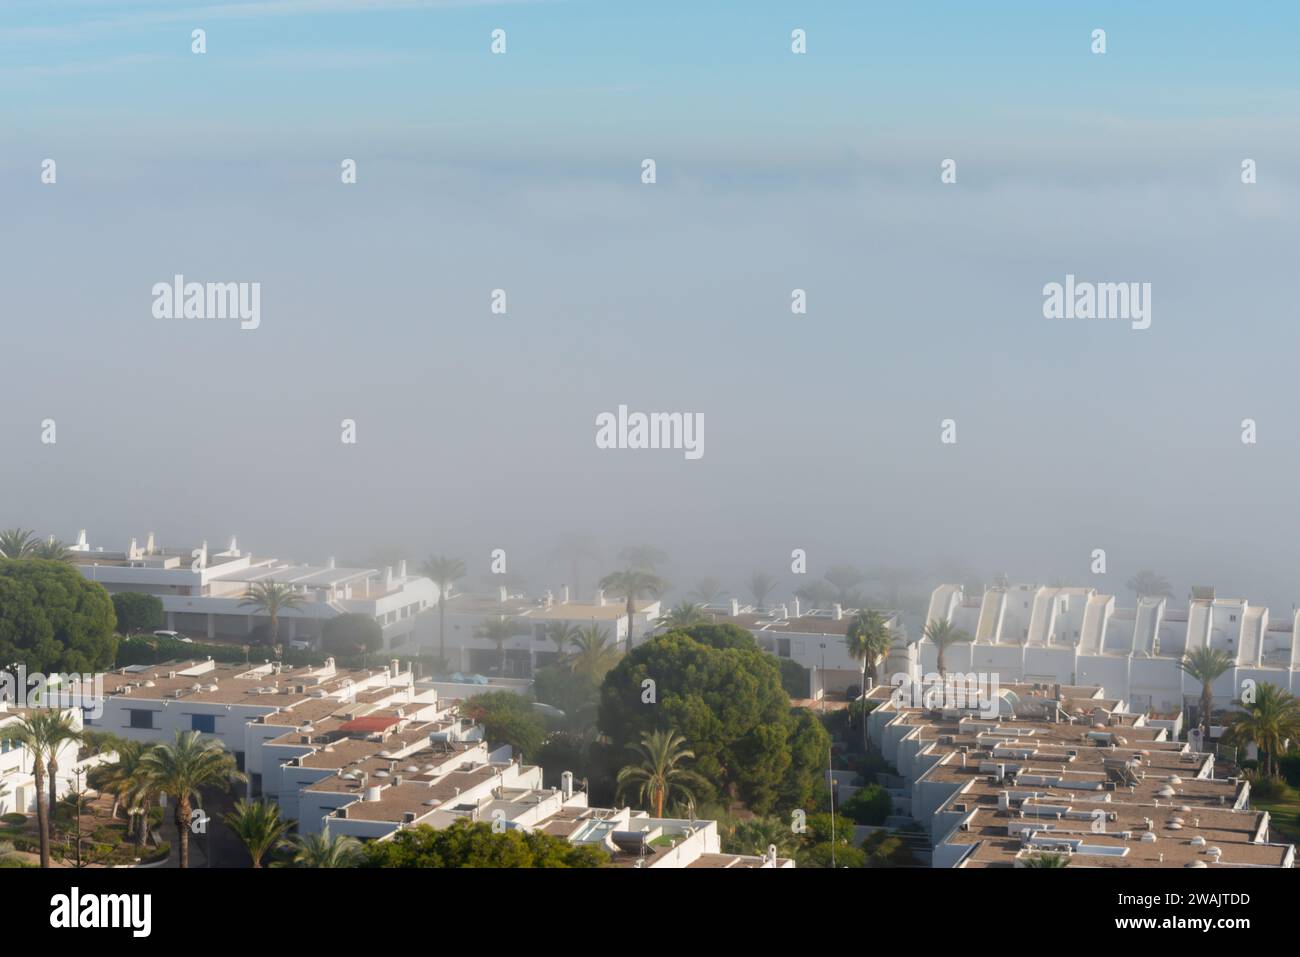 AGUADULCE, ESPAGNE - 12 DÉCEMBRE 2023 brouillard suspendu au-dessus d'une ville balnéaire en Espagne, vue sur la promenade, la bande côtière et la mer Méditerranée dans l'Andalu Banque D'Images